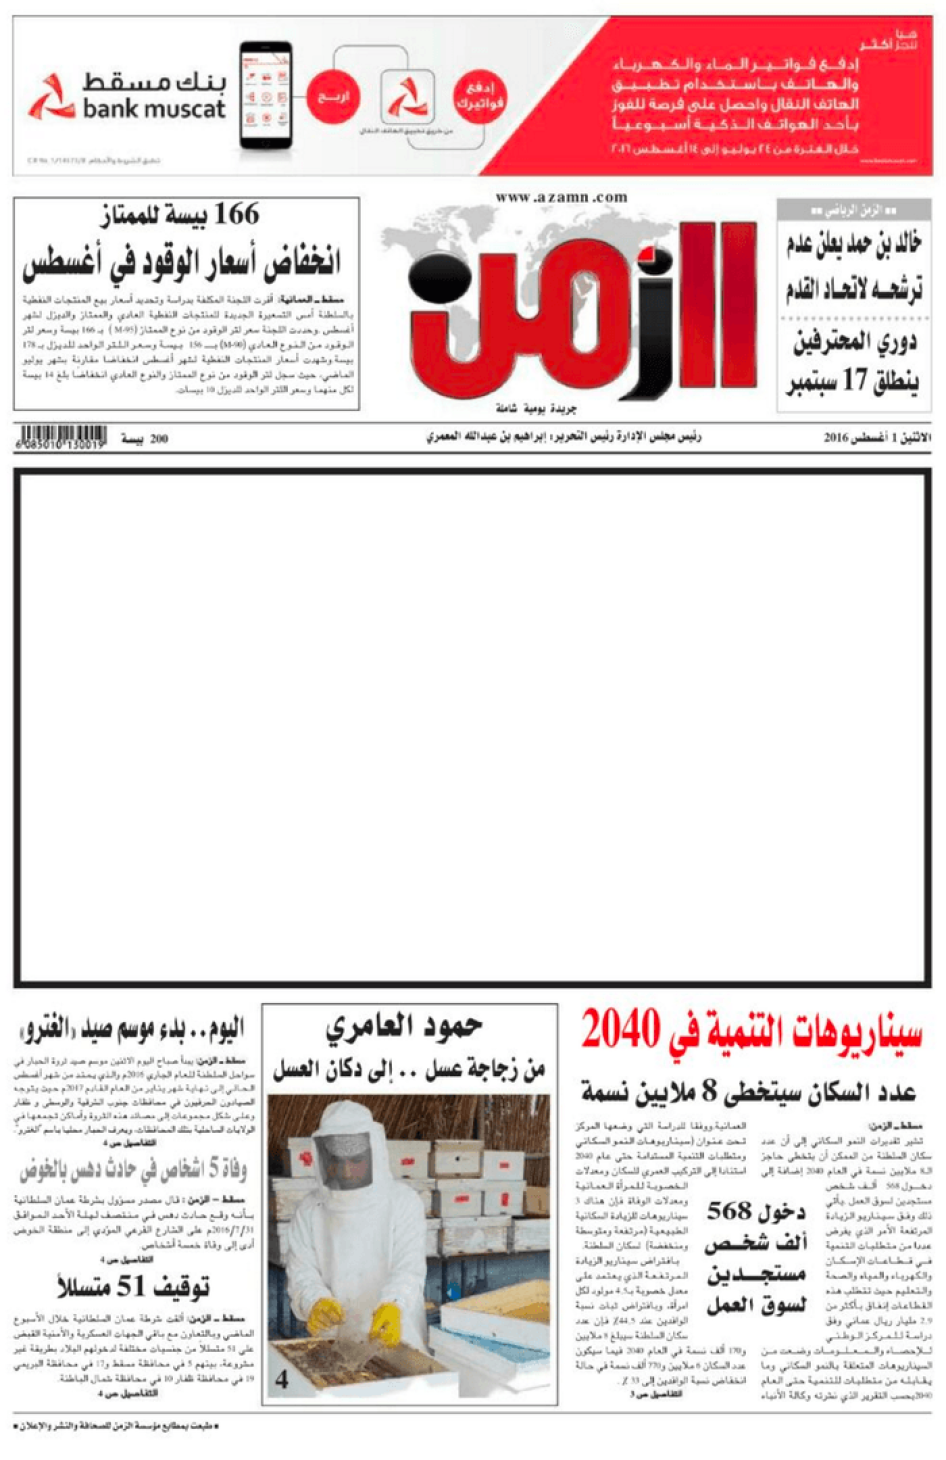 بعد اعتقال رئيس تحريرها إبراهيم المعمري، نشرت صحيفة الزمن العمانية صفحة أولى فارغة، إثر مزاعم بأن السلطات هددت الصحيفة لثنيها عن تغطية الاعتقال. 